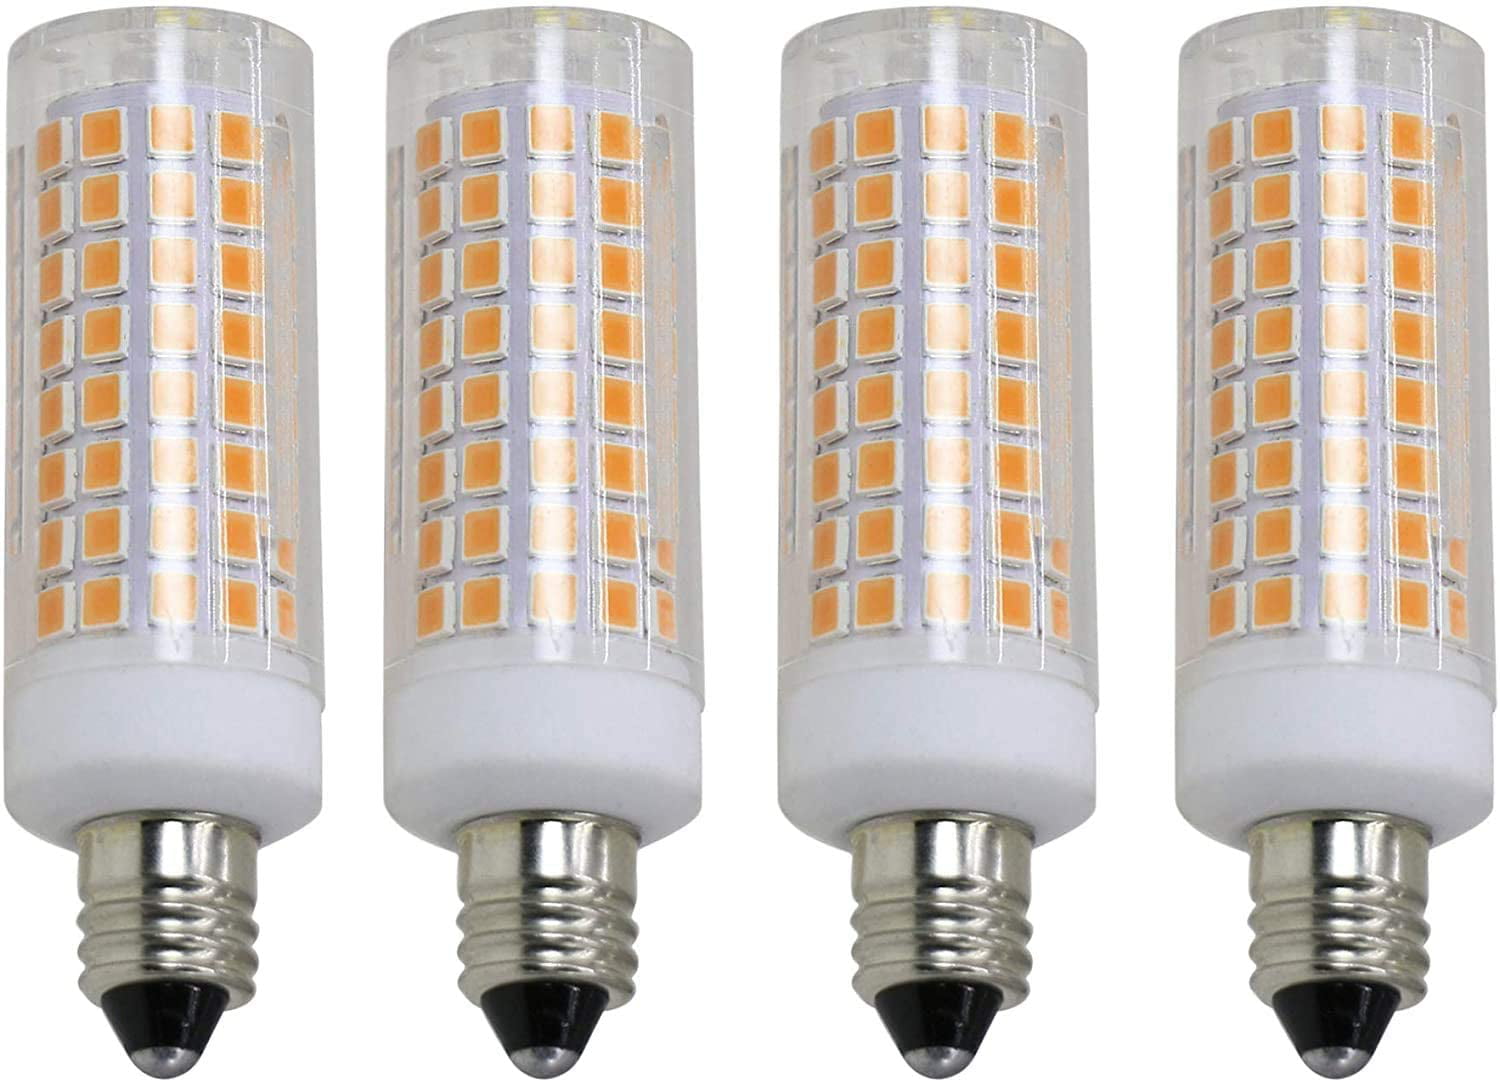 Pack of 2 Dimmable E11 LED Bulb Light 7 75WHalogen Bulbs Equivalent 3000K Warm White for Chandeliers Ceiling Fan Light AC110V 120V 130V Mini Candelabra Base 7W 